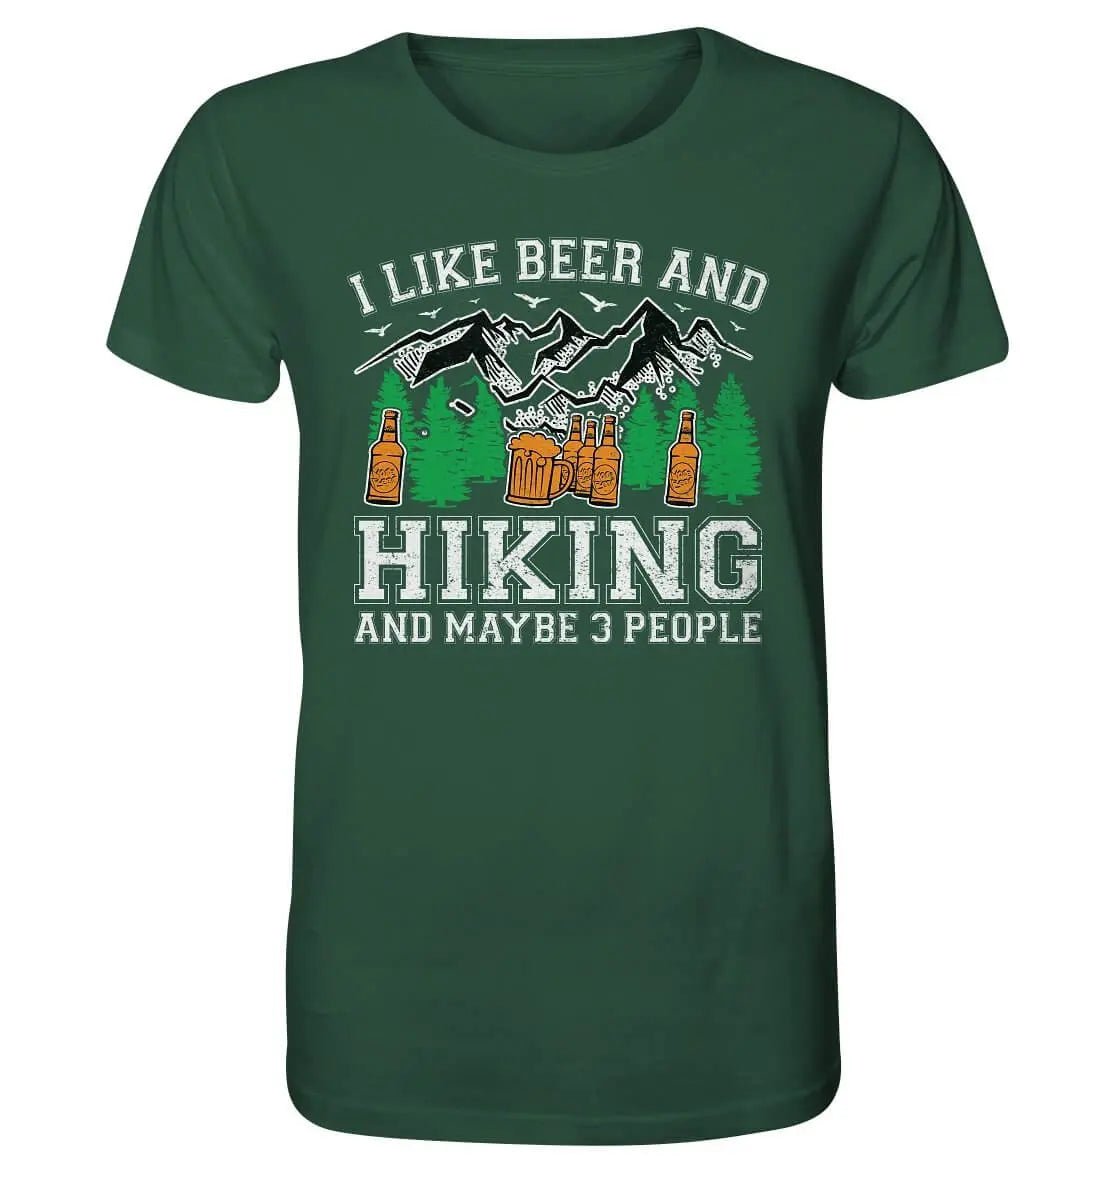 Ein grünes I Like Beer, Hiking and Maybe 3 People Bier T-Shirt für Männer von Hoppymerch.